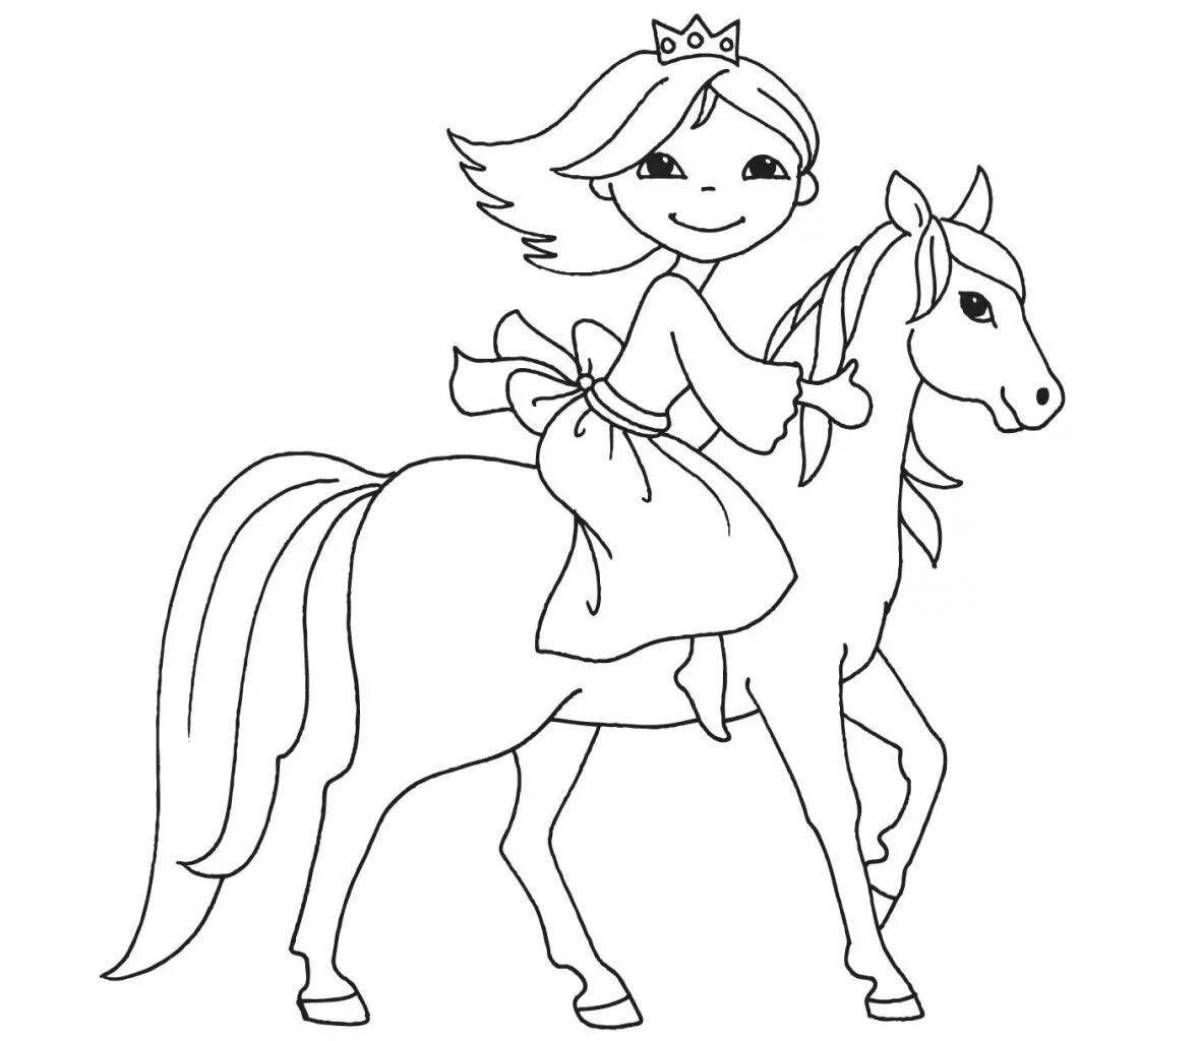 Horse and princess #2